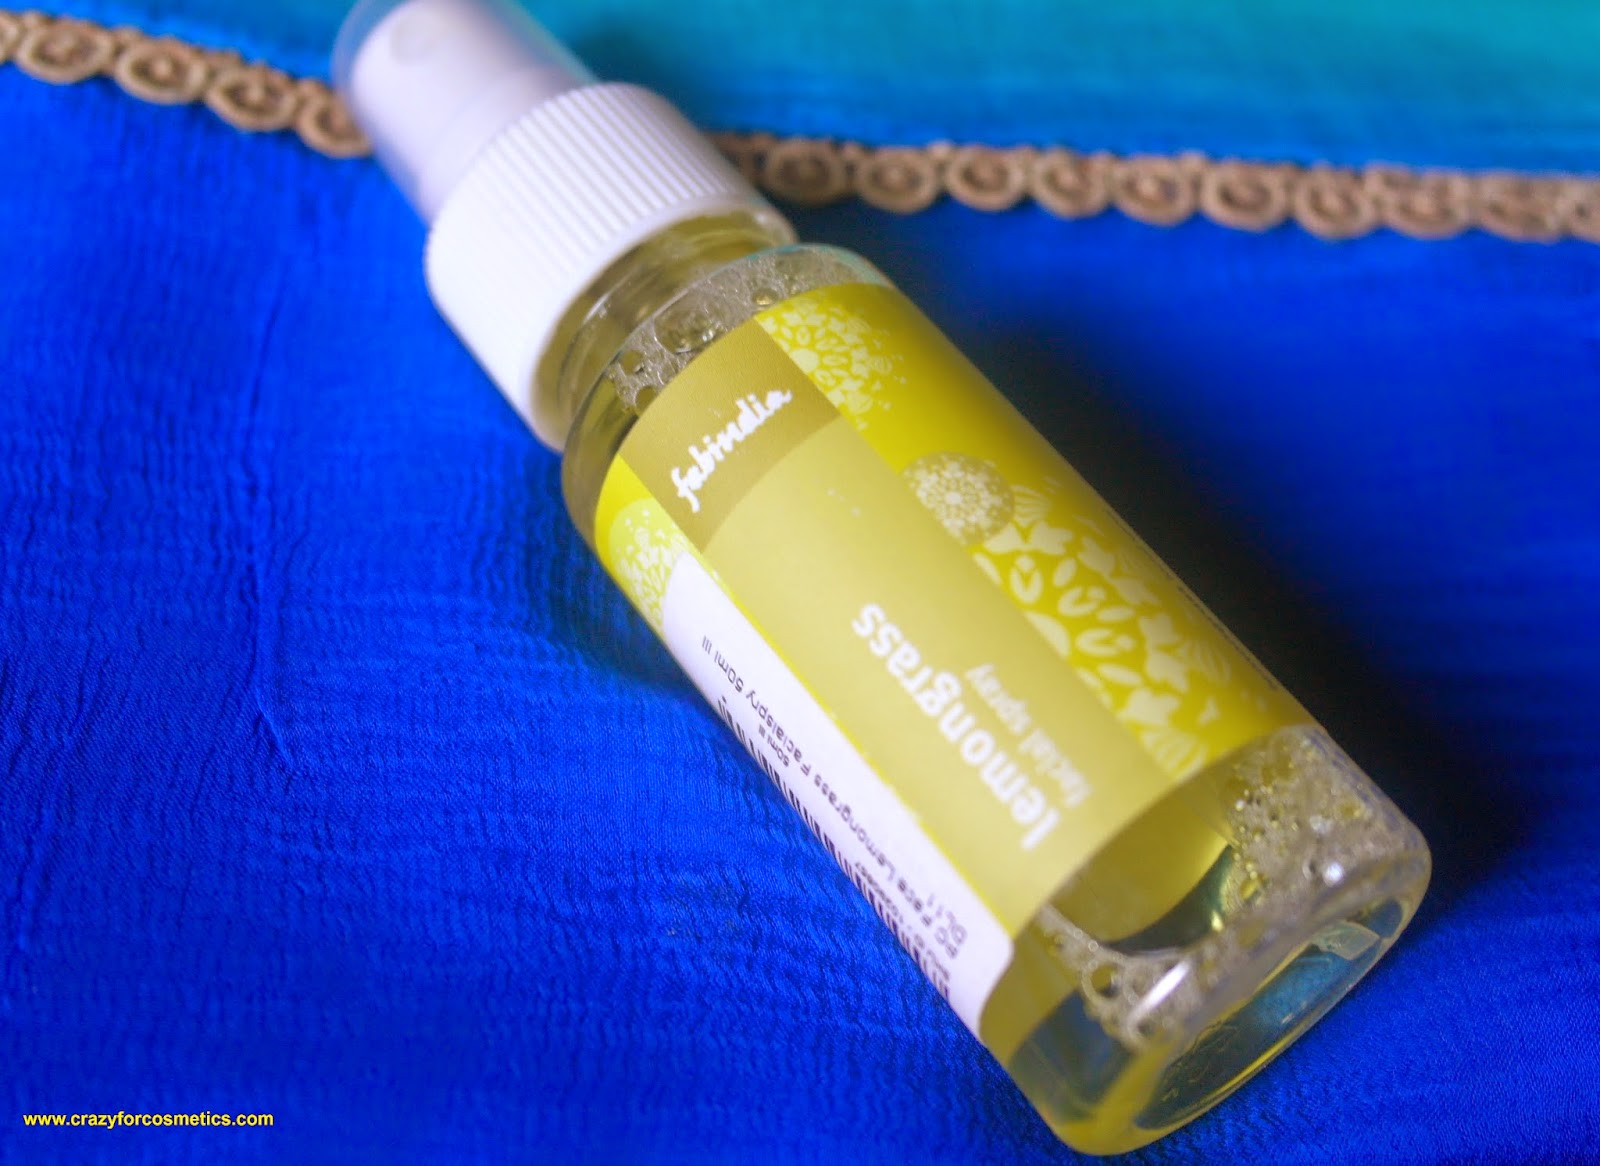 fabindia lemongrass facial spray review